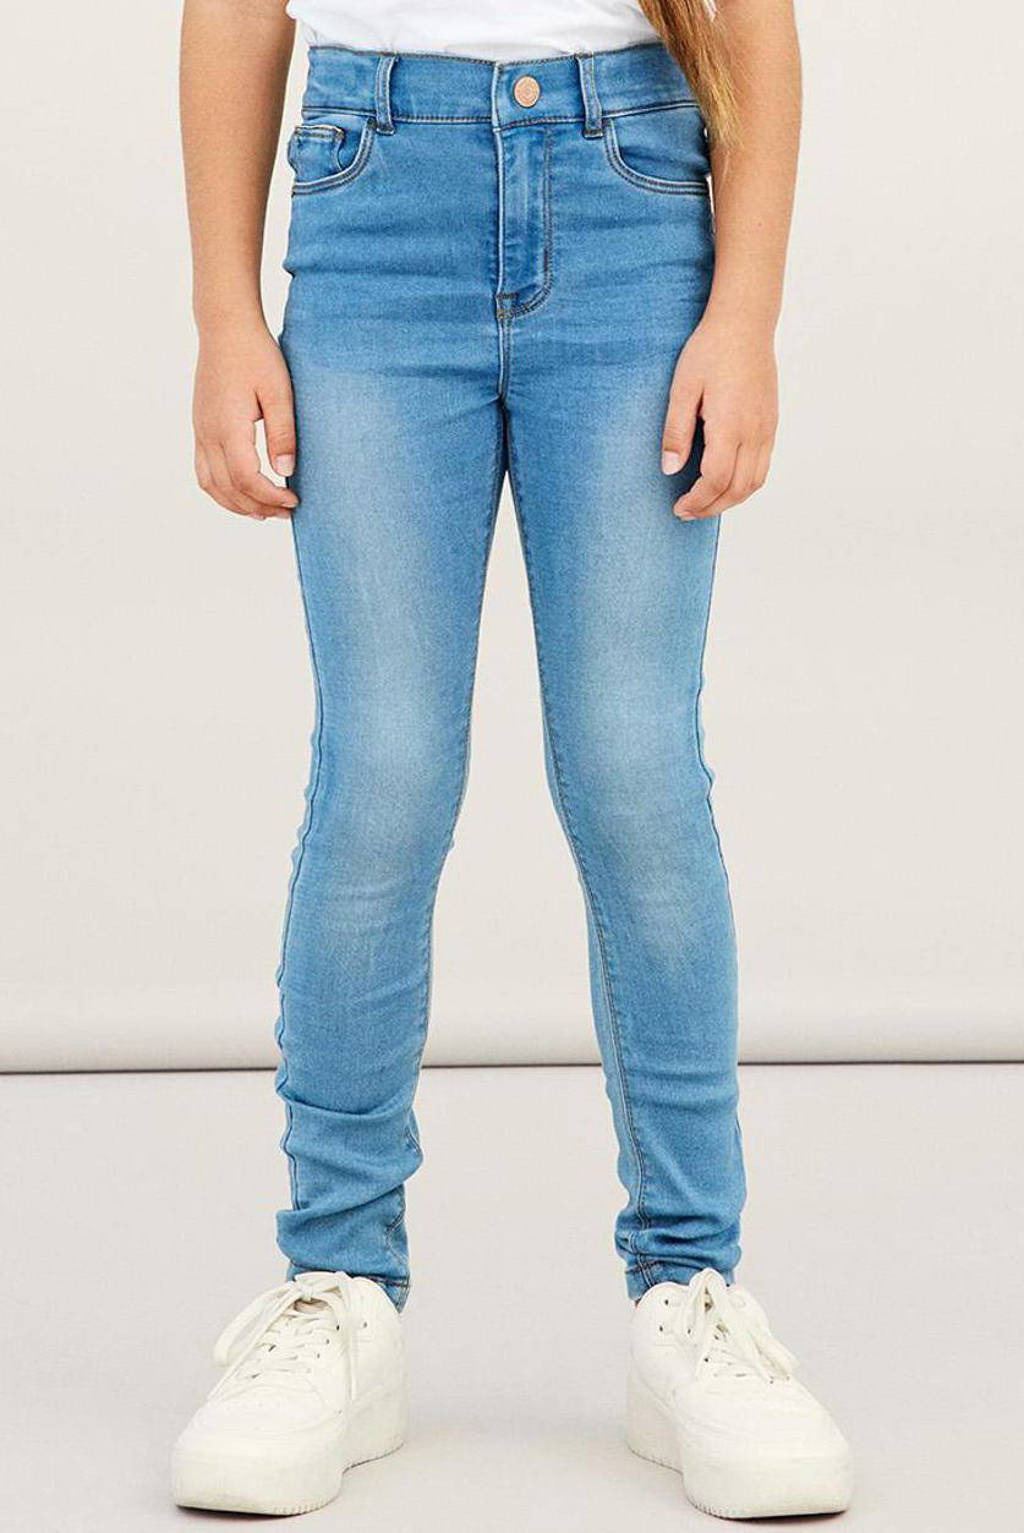 Lichtblauwe meisjes NAME IT KIDS skinny jeans van stretchdenim met regular waist en rits- en knoopsluiting